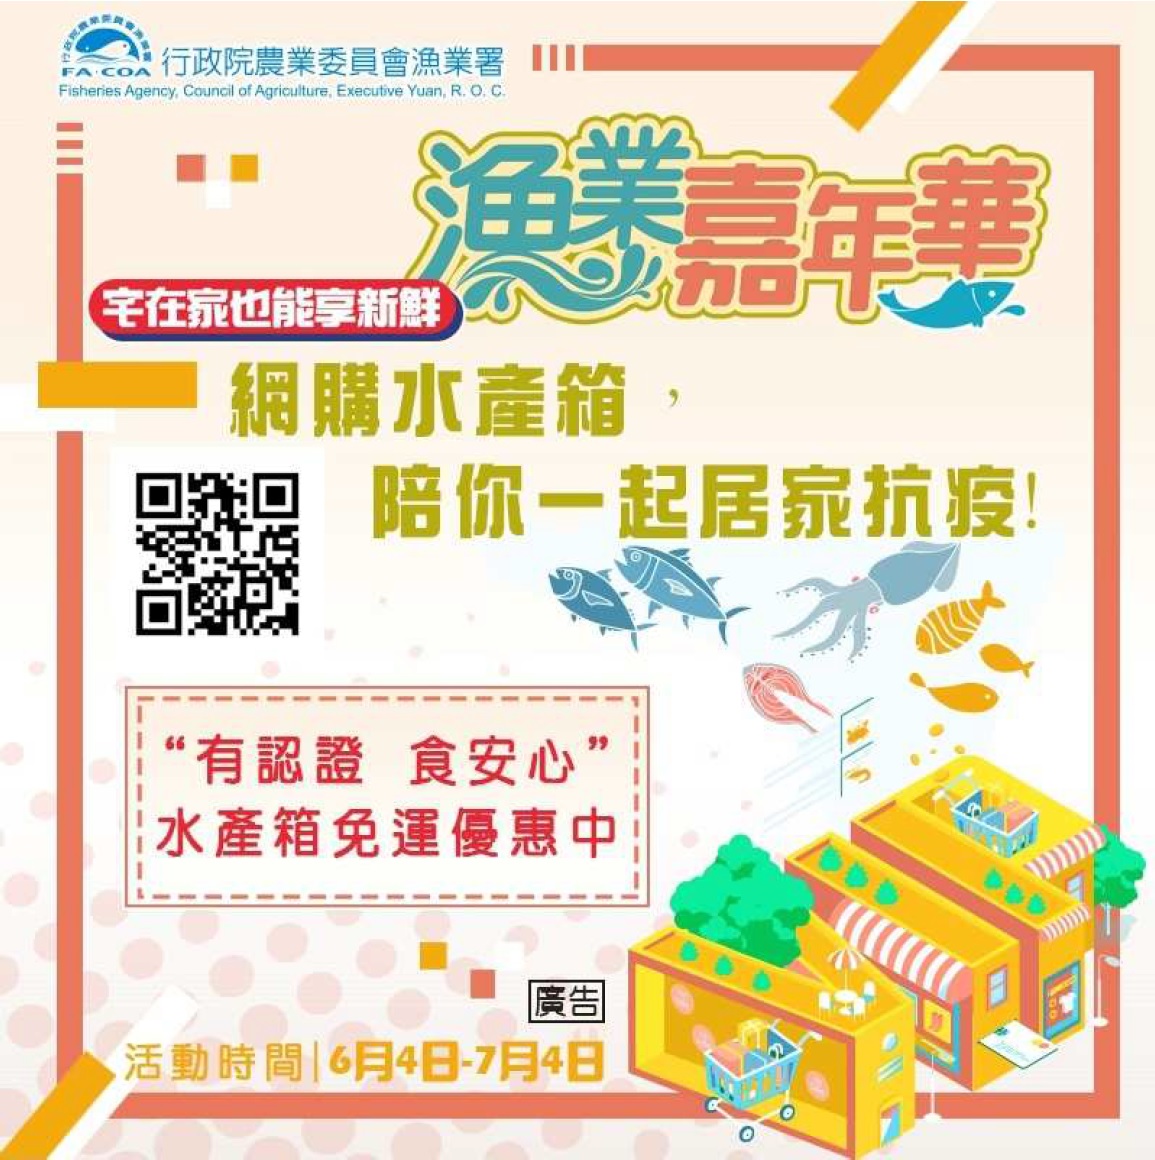 「漁業嘉年華」線上導購平臺